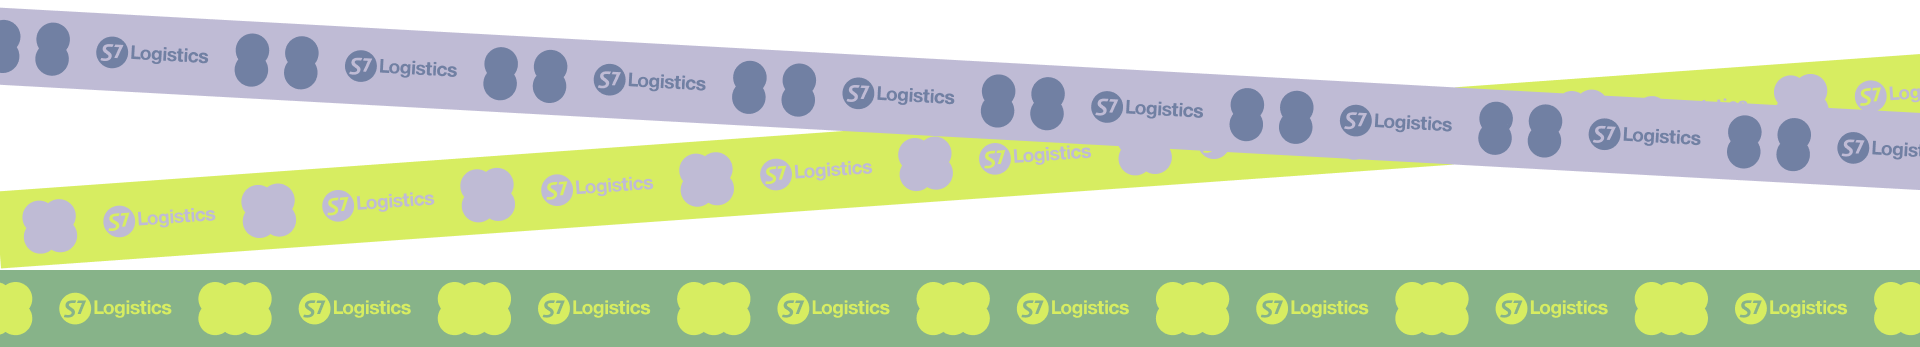 s7 logistics line with logo